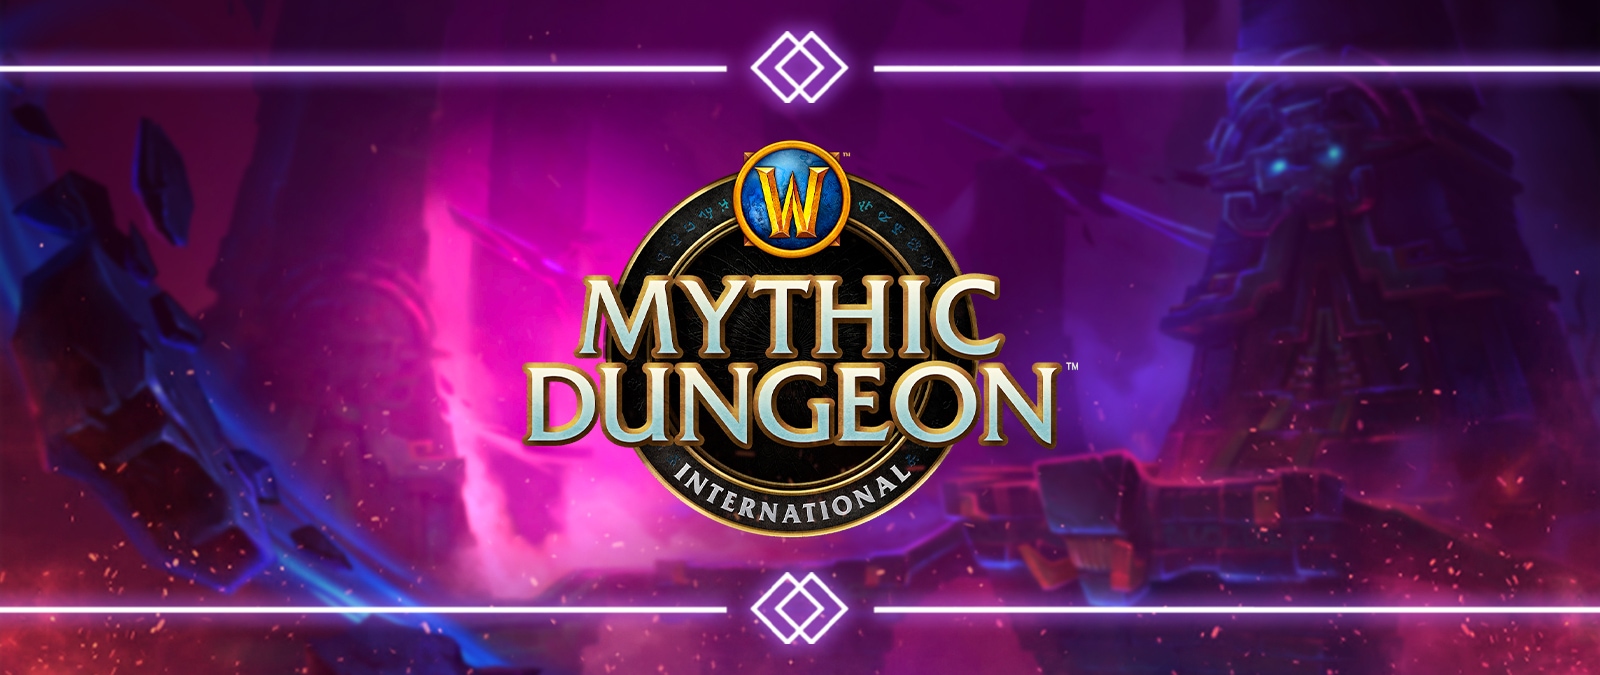 Mythic Dungeon International: Saison 2 von Shadowlands beginnt!